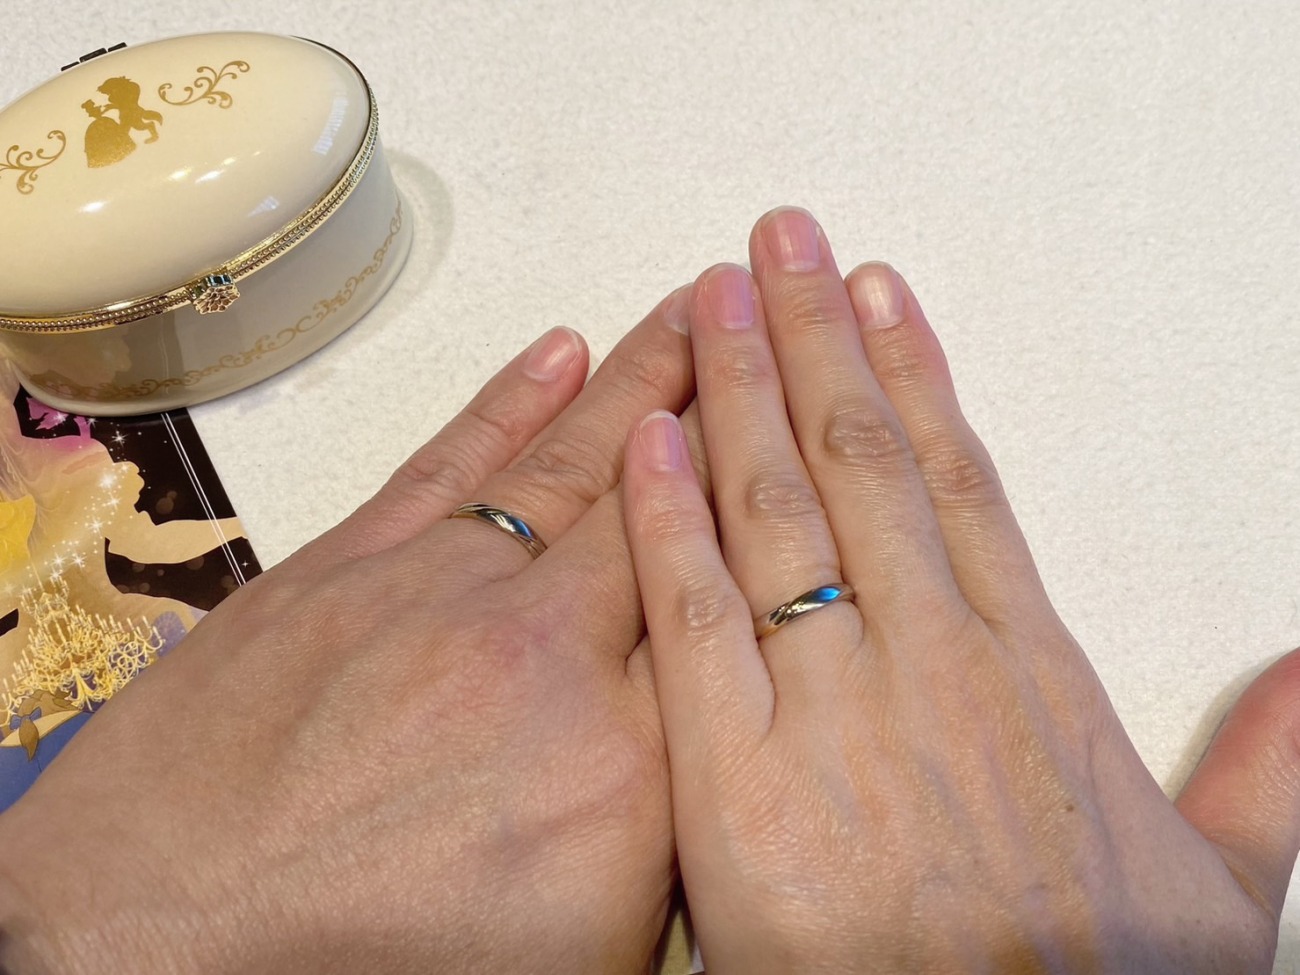 結婚20周年記念に選んだディズニー美女と野獣の限定デザインの結婚指輪